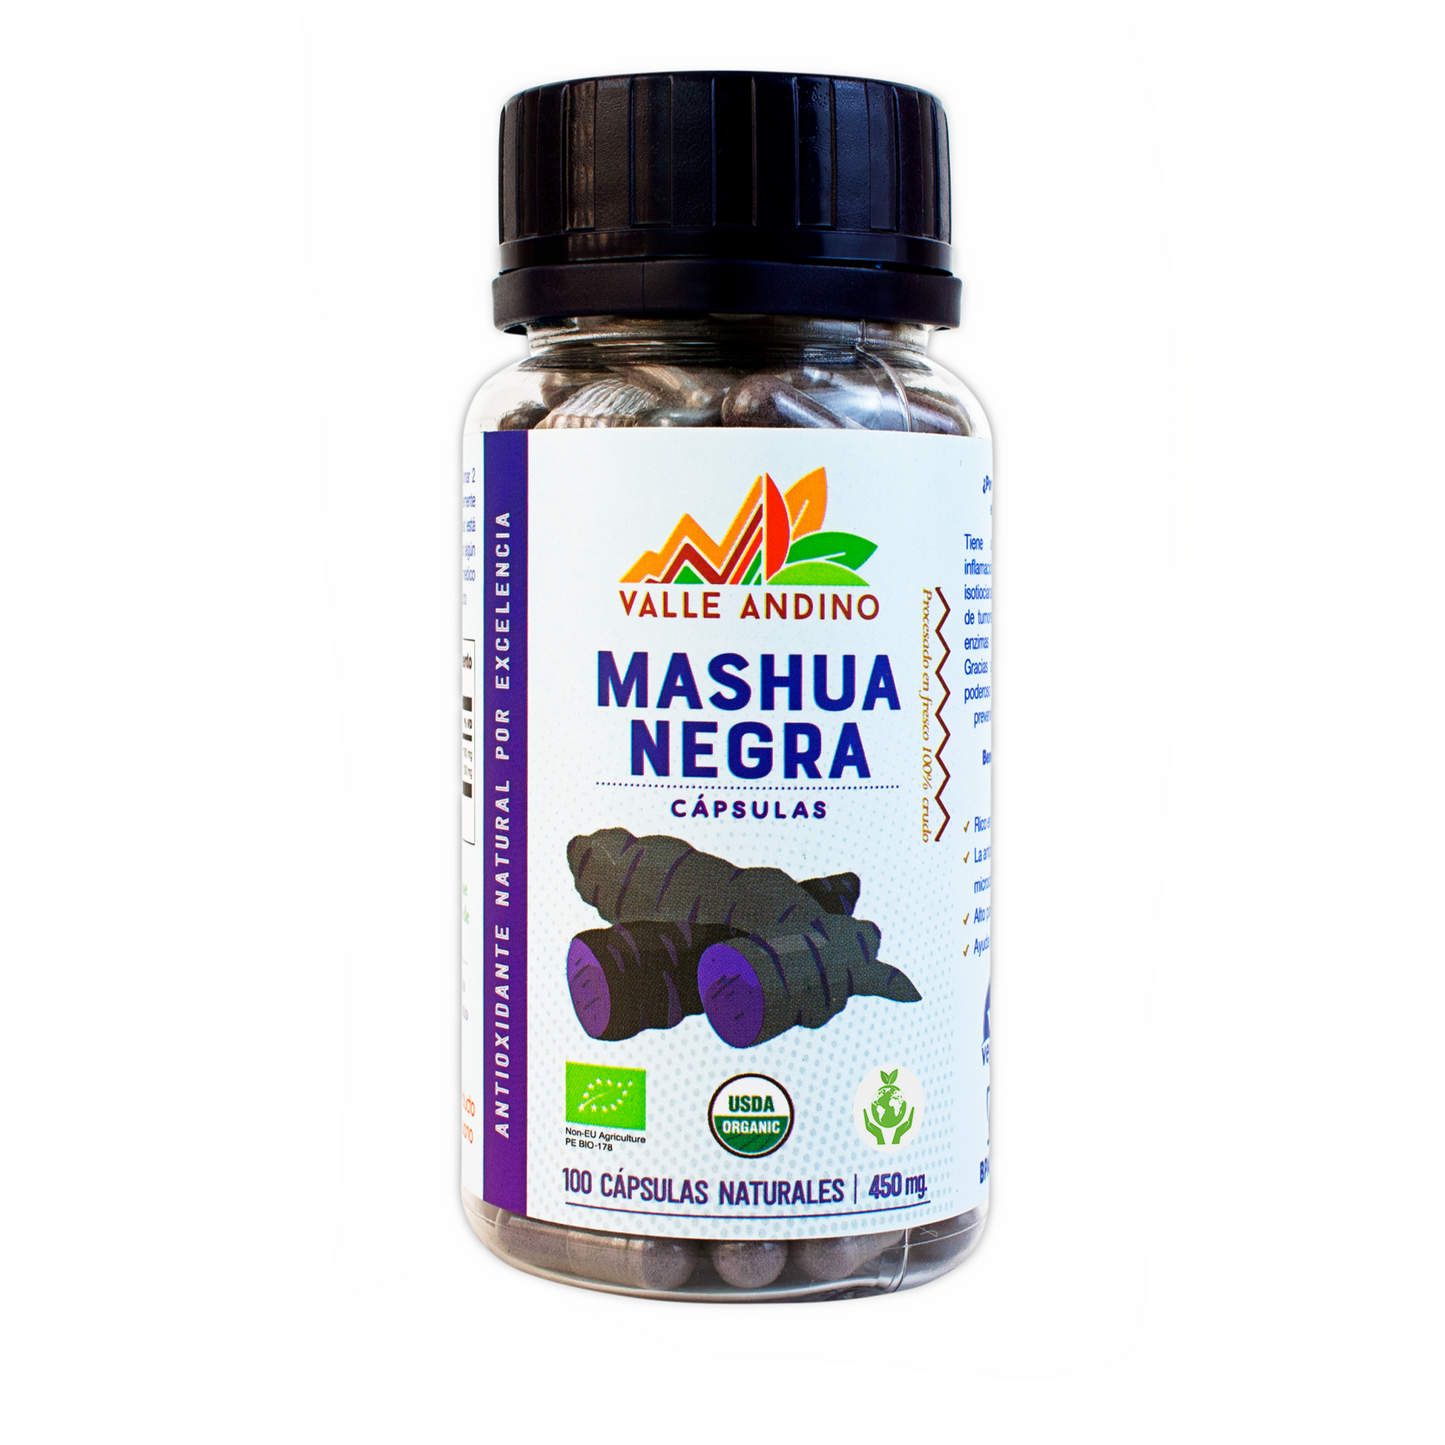 Organic Black Mashua capsules x 100 units